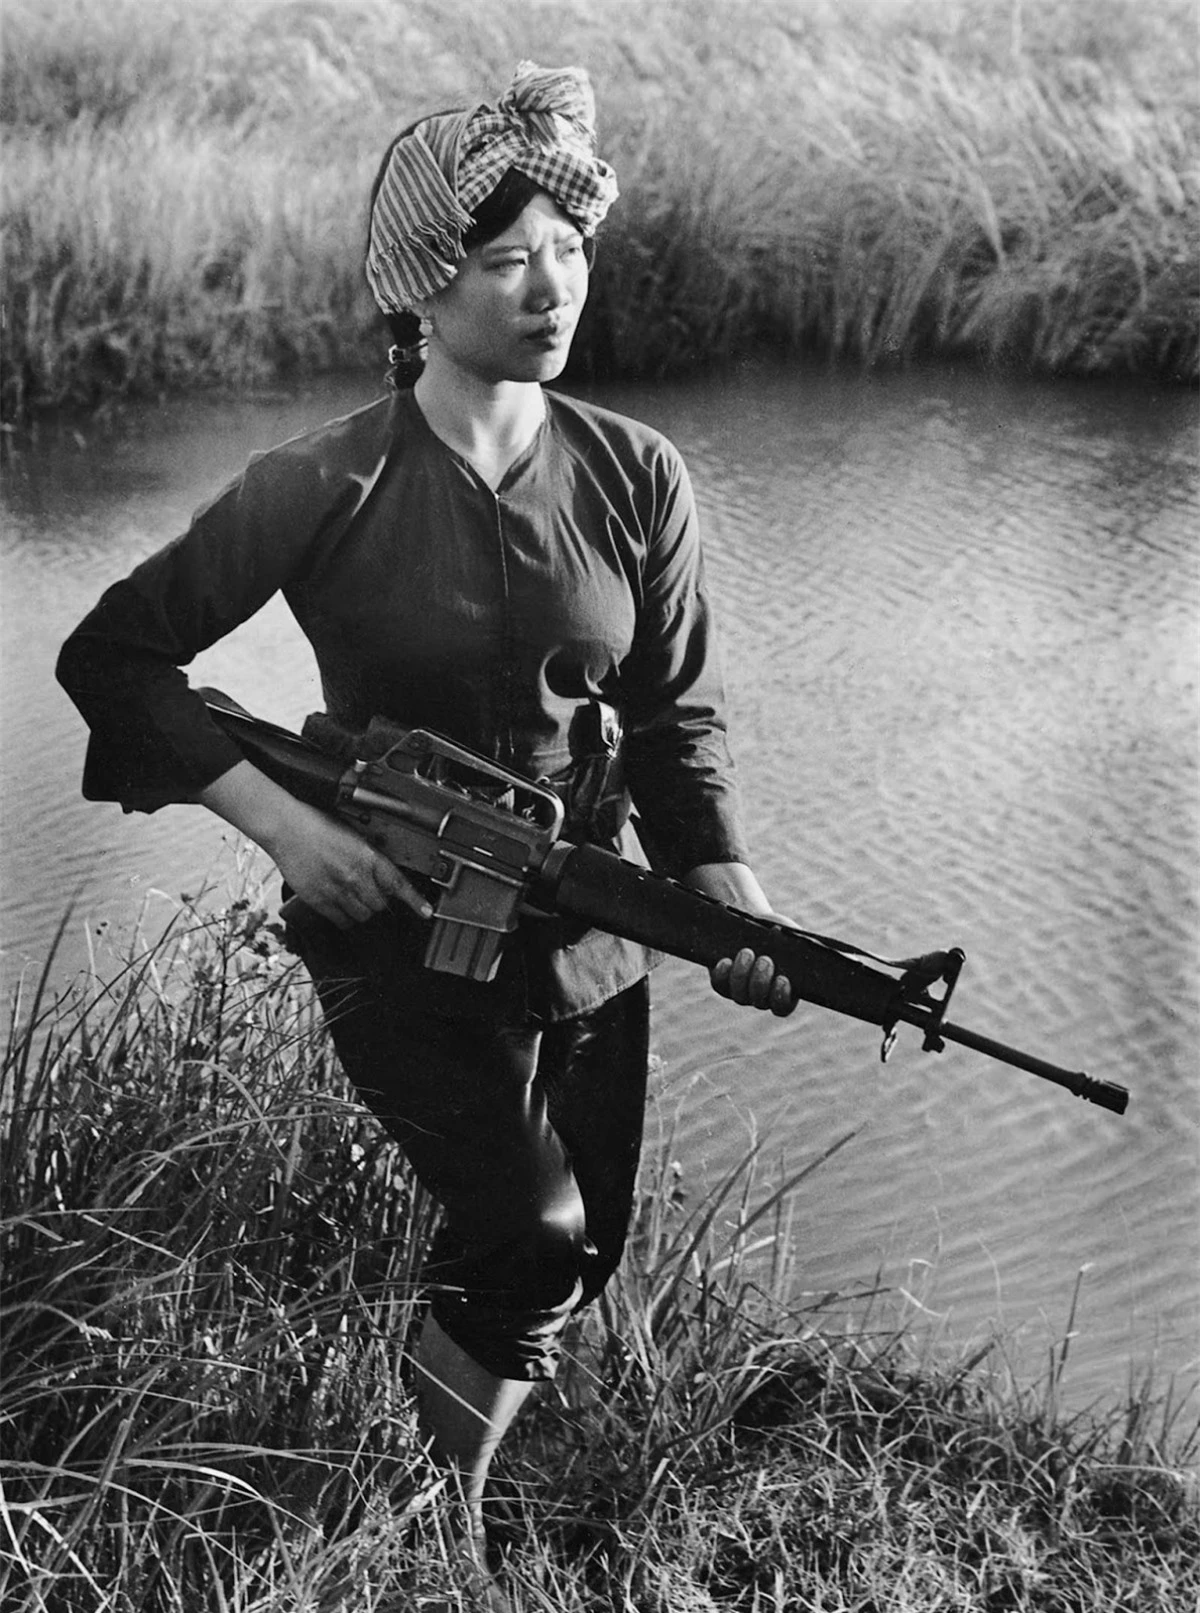 Nữ du kích cách mạng Lâm Thị Đẹp ở Sóc Trăng năm 1972. Ảnh: Minh Trường (đăng trên websiteTumblr).